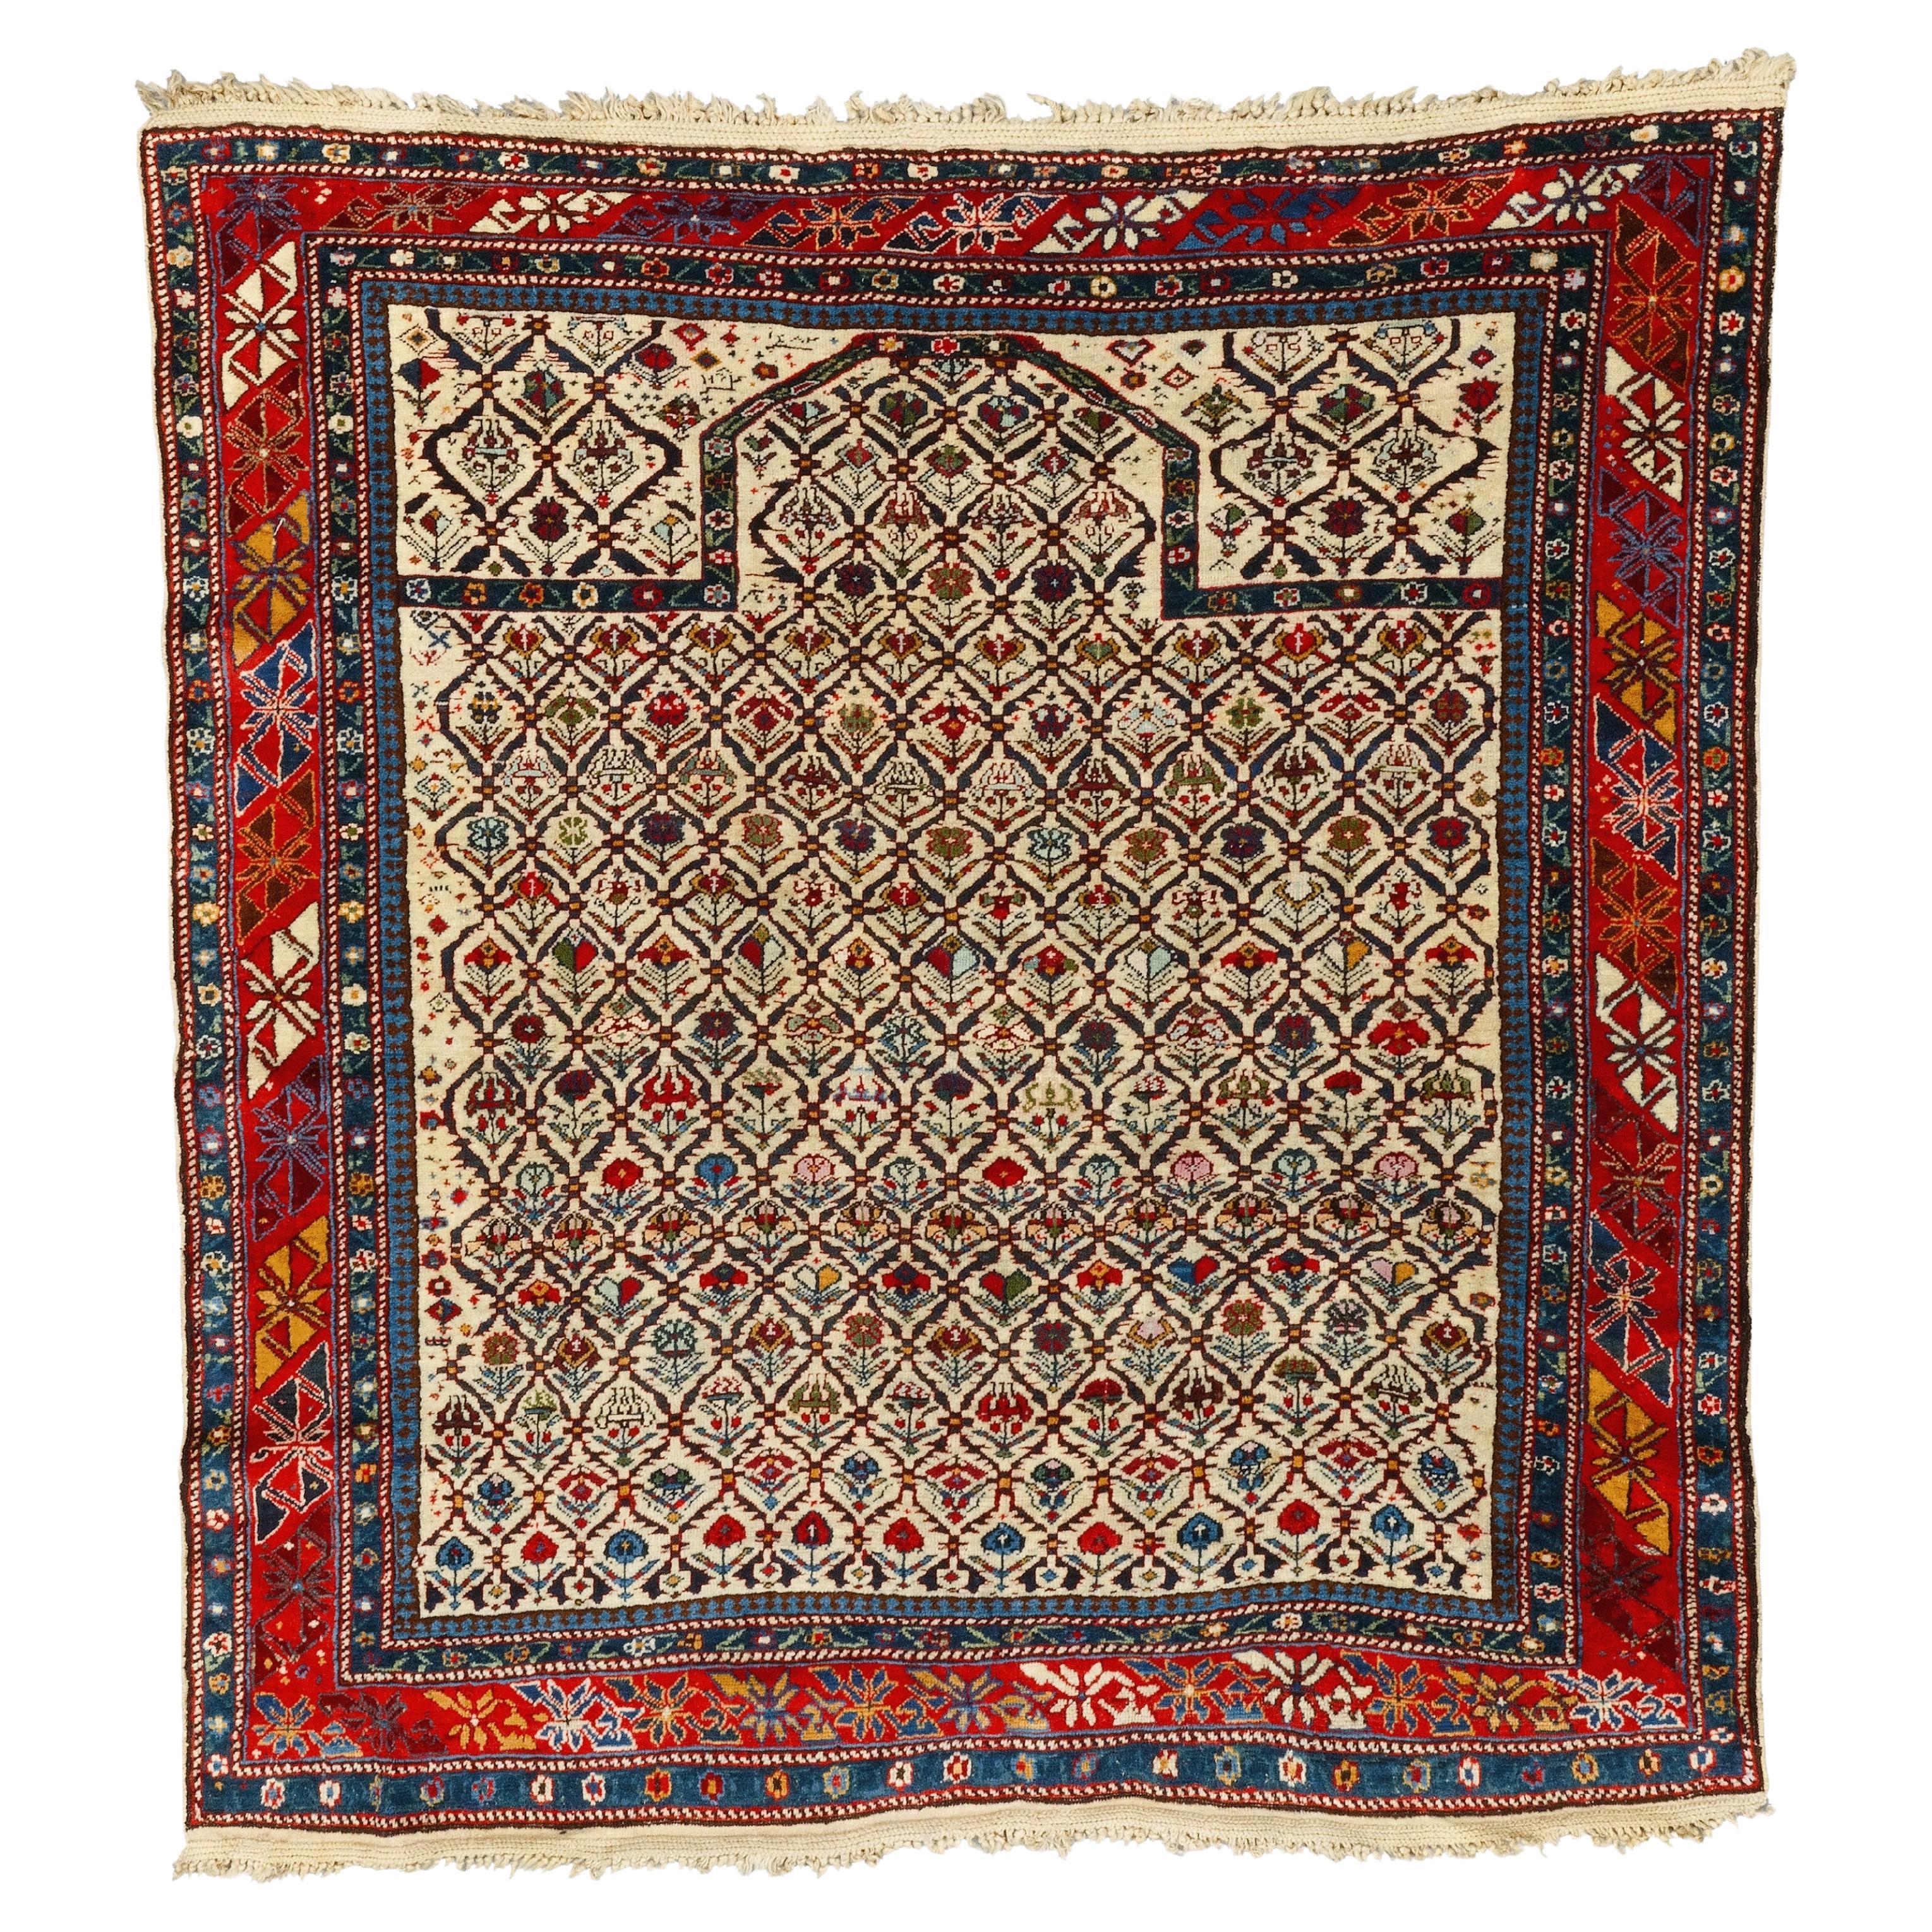 Antiker Schirwan-Teppich - Kaukasischer Schirwan-Gebetteppich aus dem 19. Jahrhundert, antiker Teppich